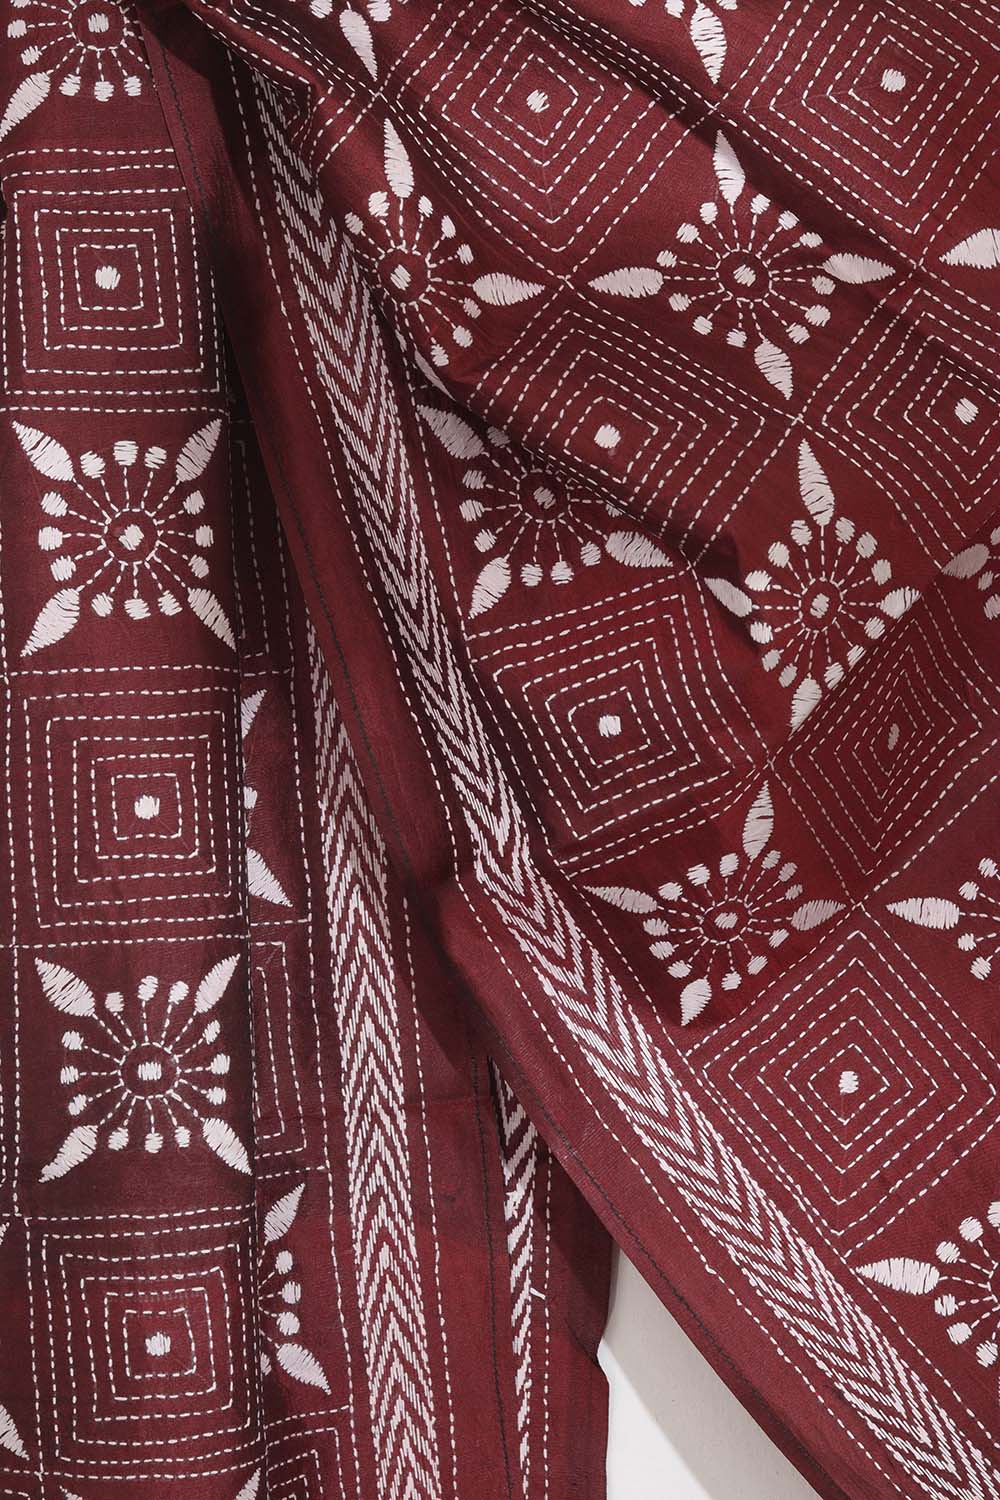 Exquisite Maroon Kantha Silk Stole: Hand-Embroidered Elegance - Luxurion World